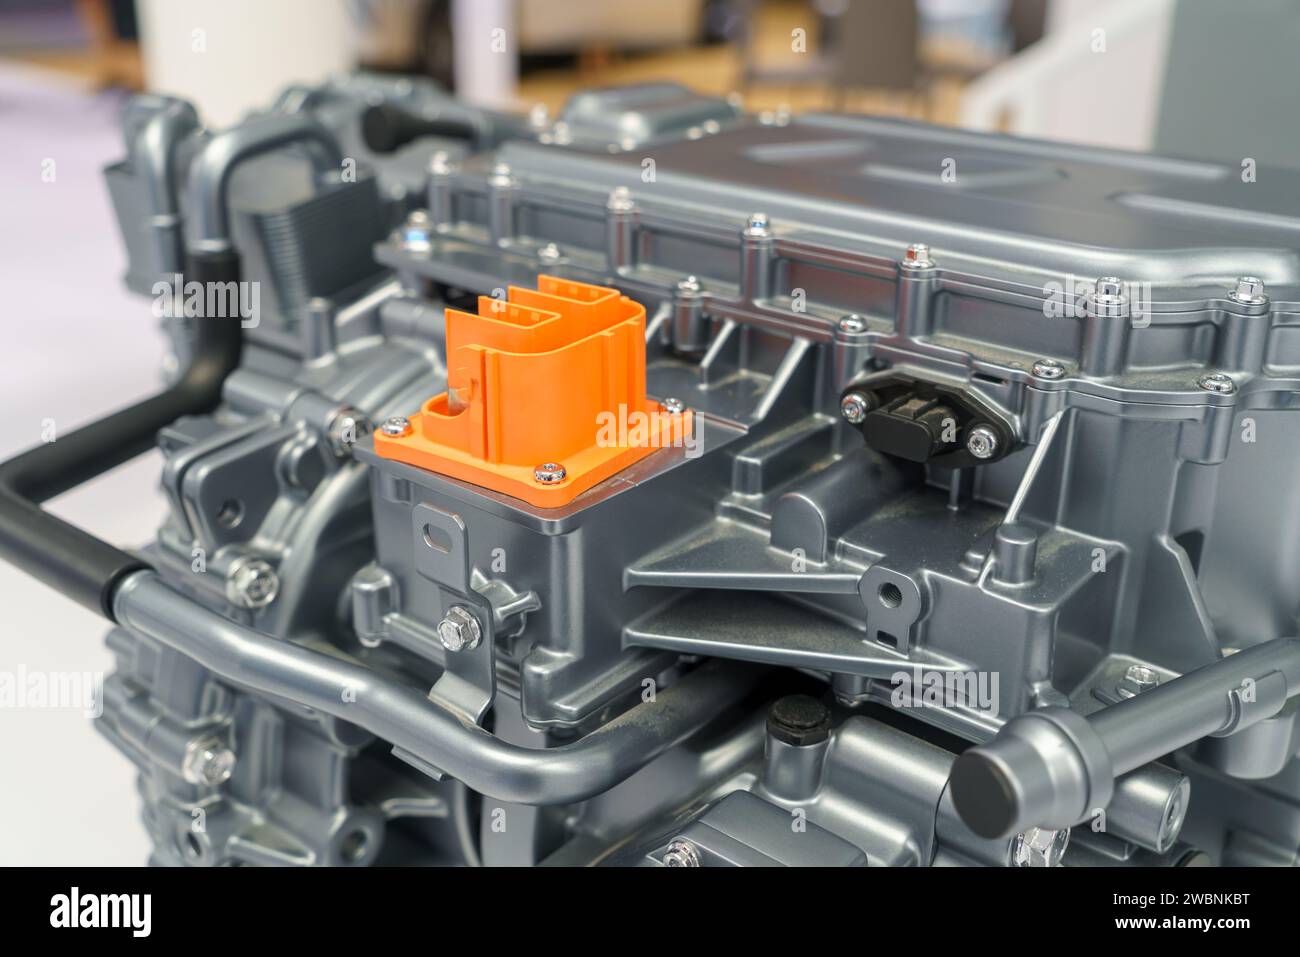 Leistungsstarker Motor unter der Motorhaube eines Elektrofahrzeugs (EV). Dieser Blick zeigt die fortschrittliche Technologie, die die umweltfreundliche Revolution vorangetrieben hat. Stockfoto